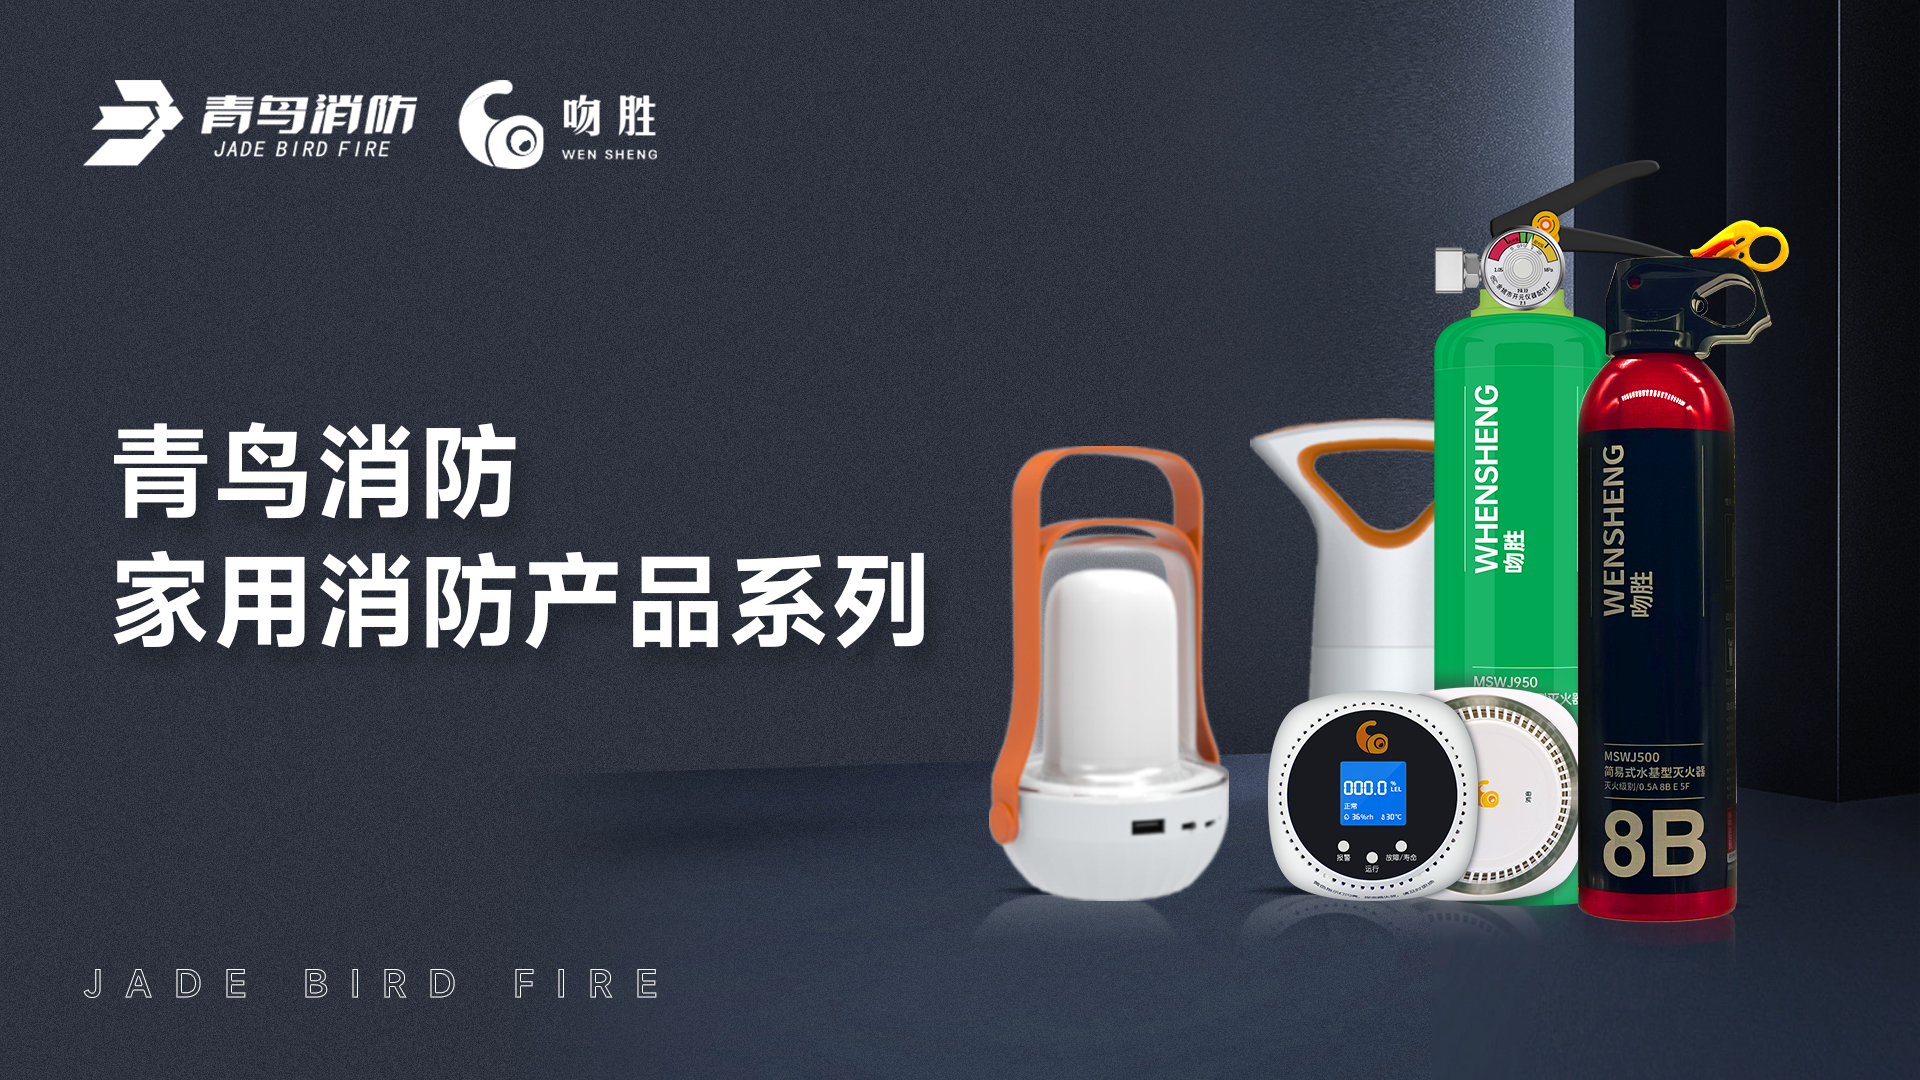 金年会（中国）app下载官网
消防 — 家用消防产品系列解决方案